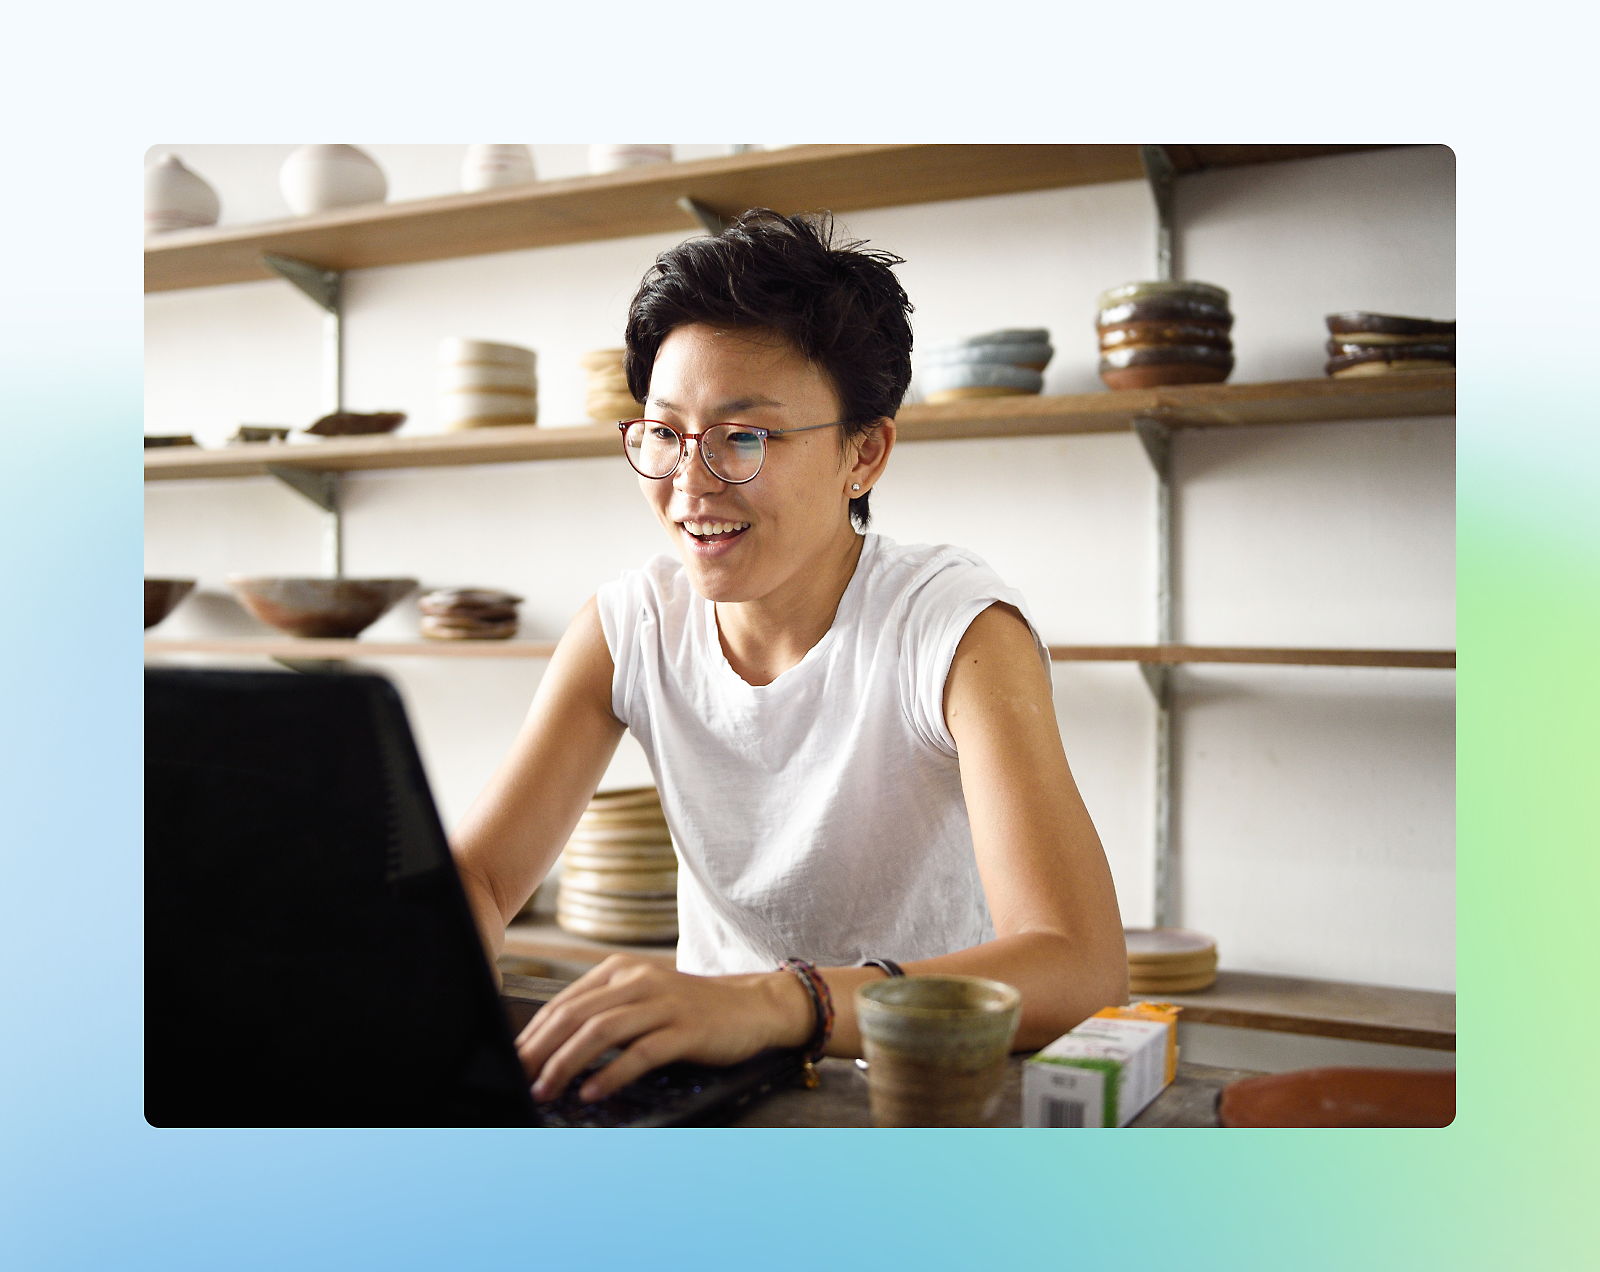 Eine Person, die eine Brille und ein weißes T-Shirt trägt, lächelt, während sie einen Laptop in einem Raum mit Regalen voller Keramik verwendet.